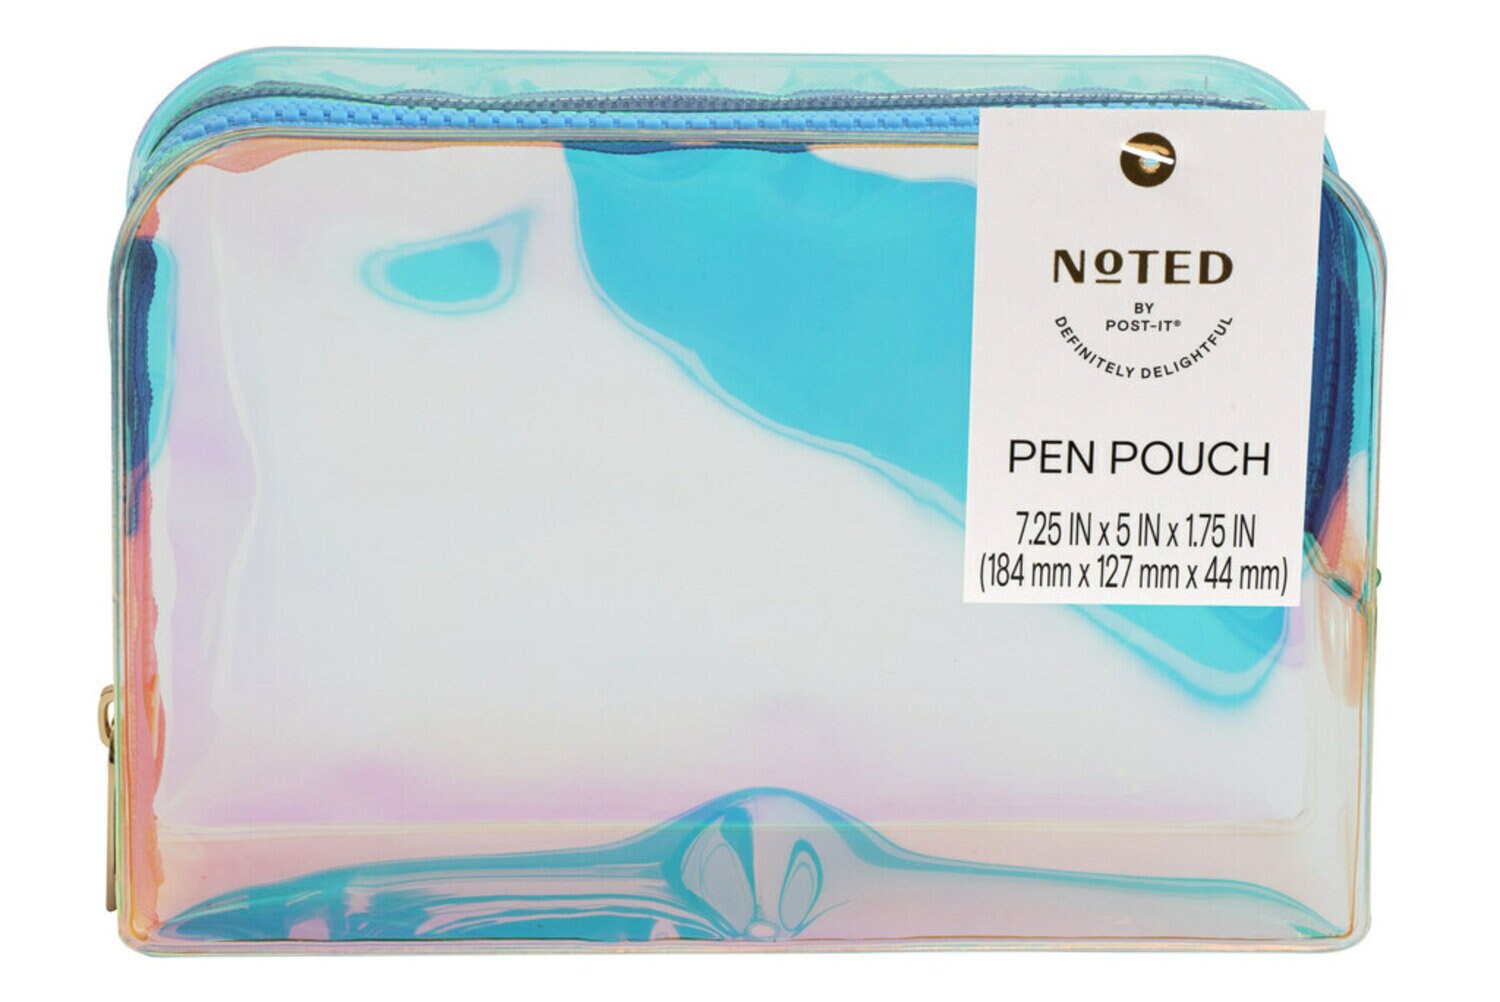 7100288725 - Post-it Pen Pouch NTD7-PP-2, One Pen Pouch